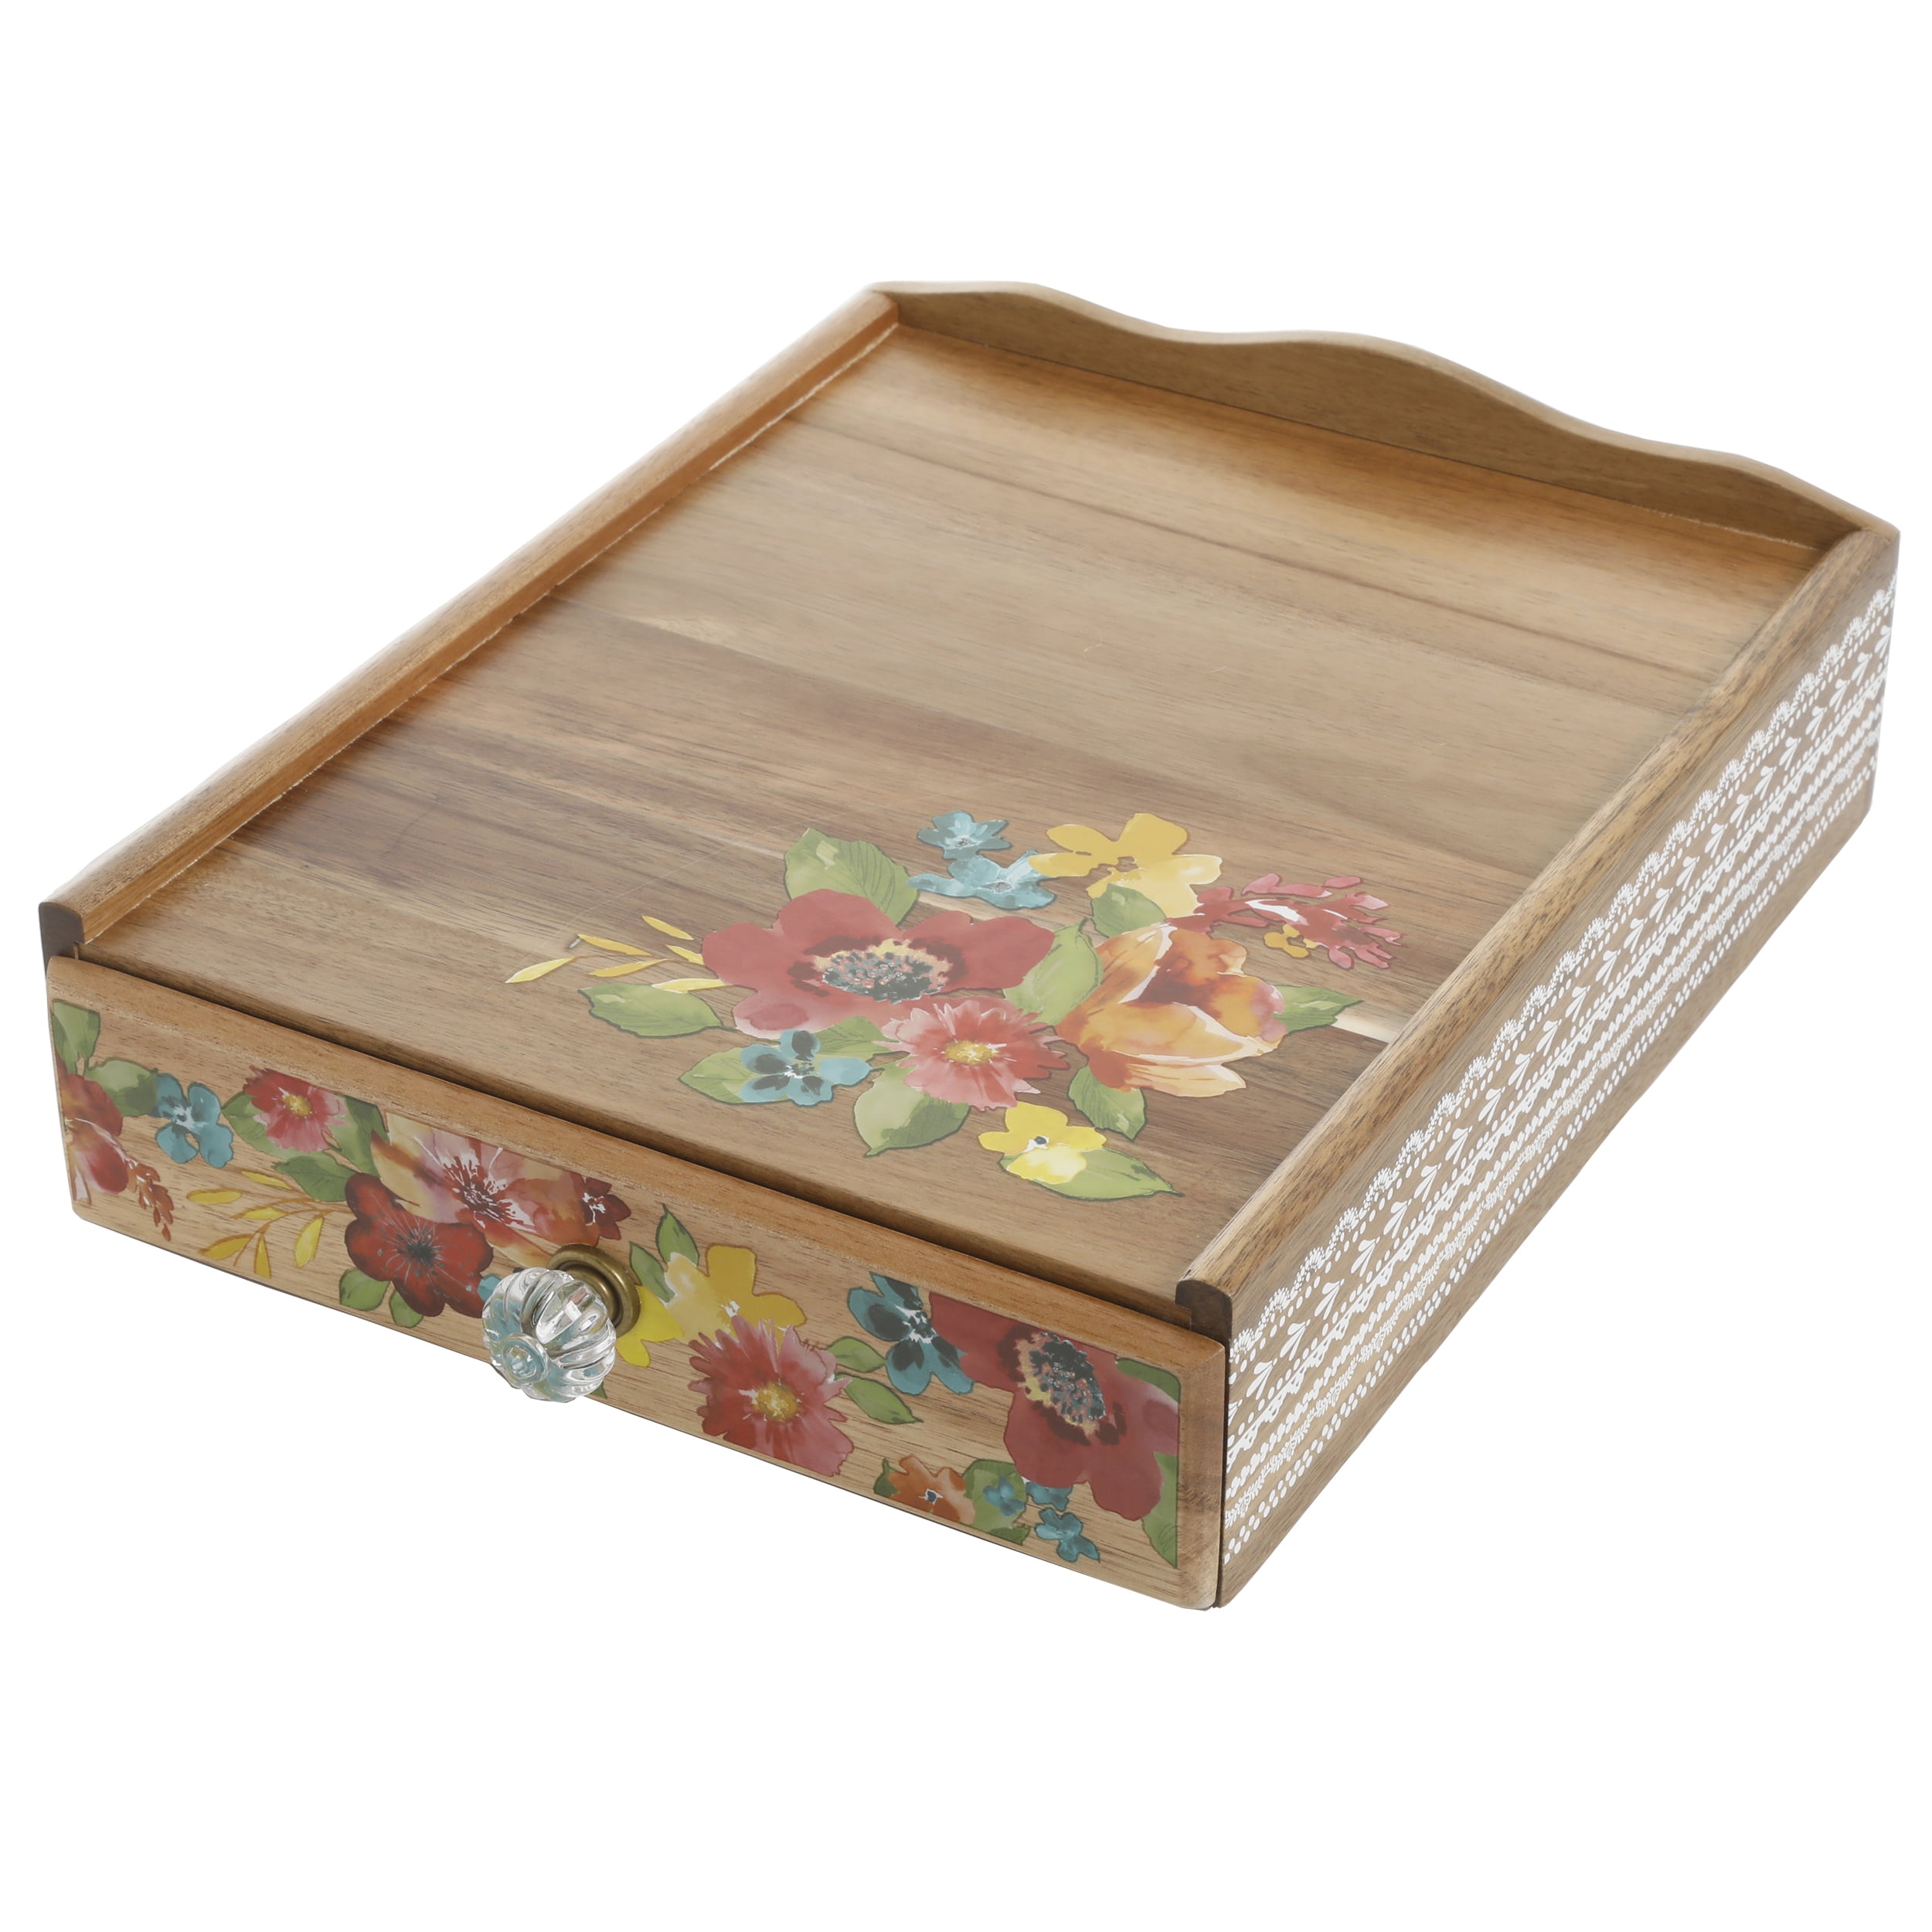 Wildflower wooden box